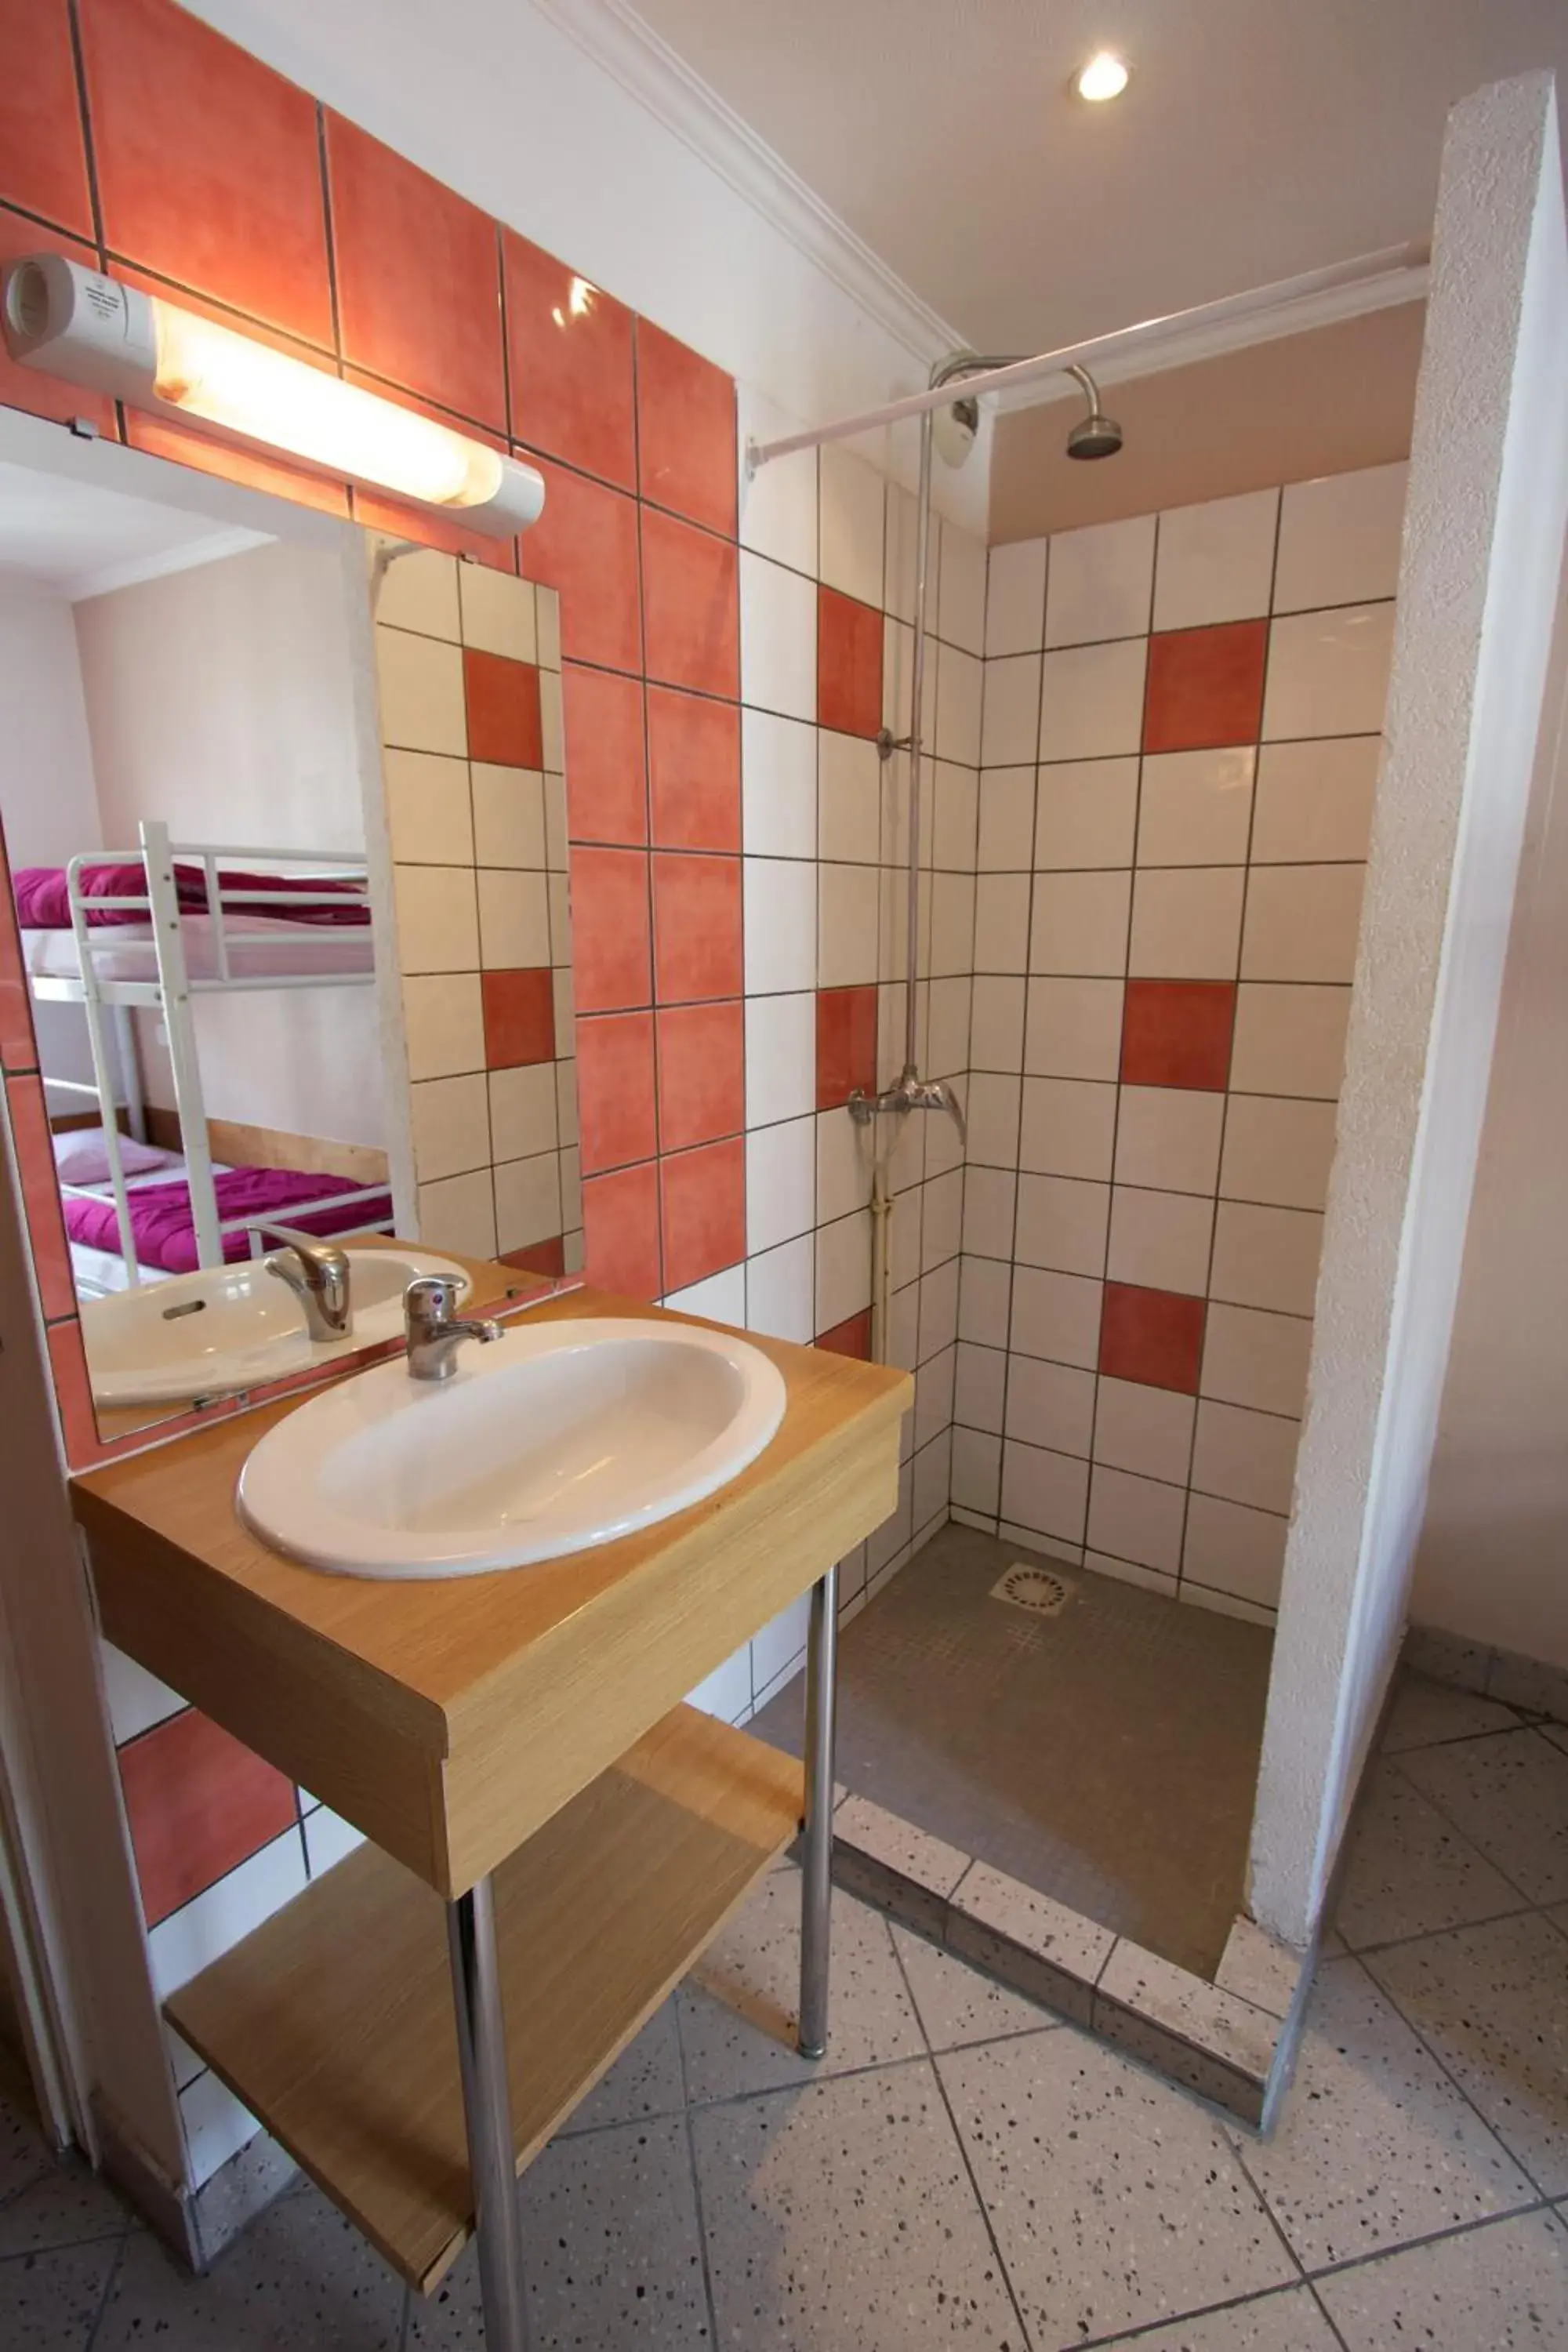 Bathroom in Bastille Hostel